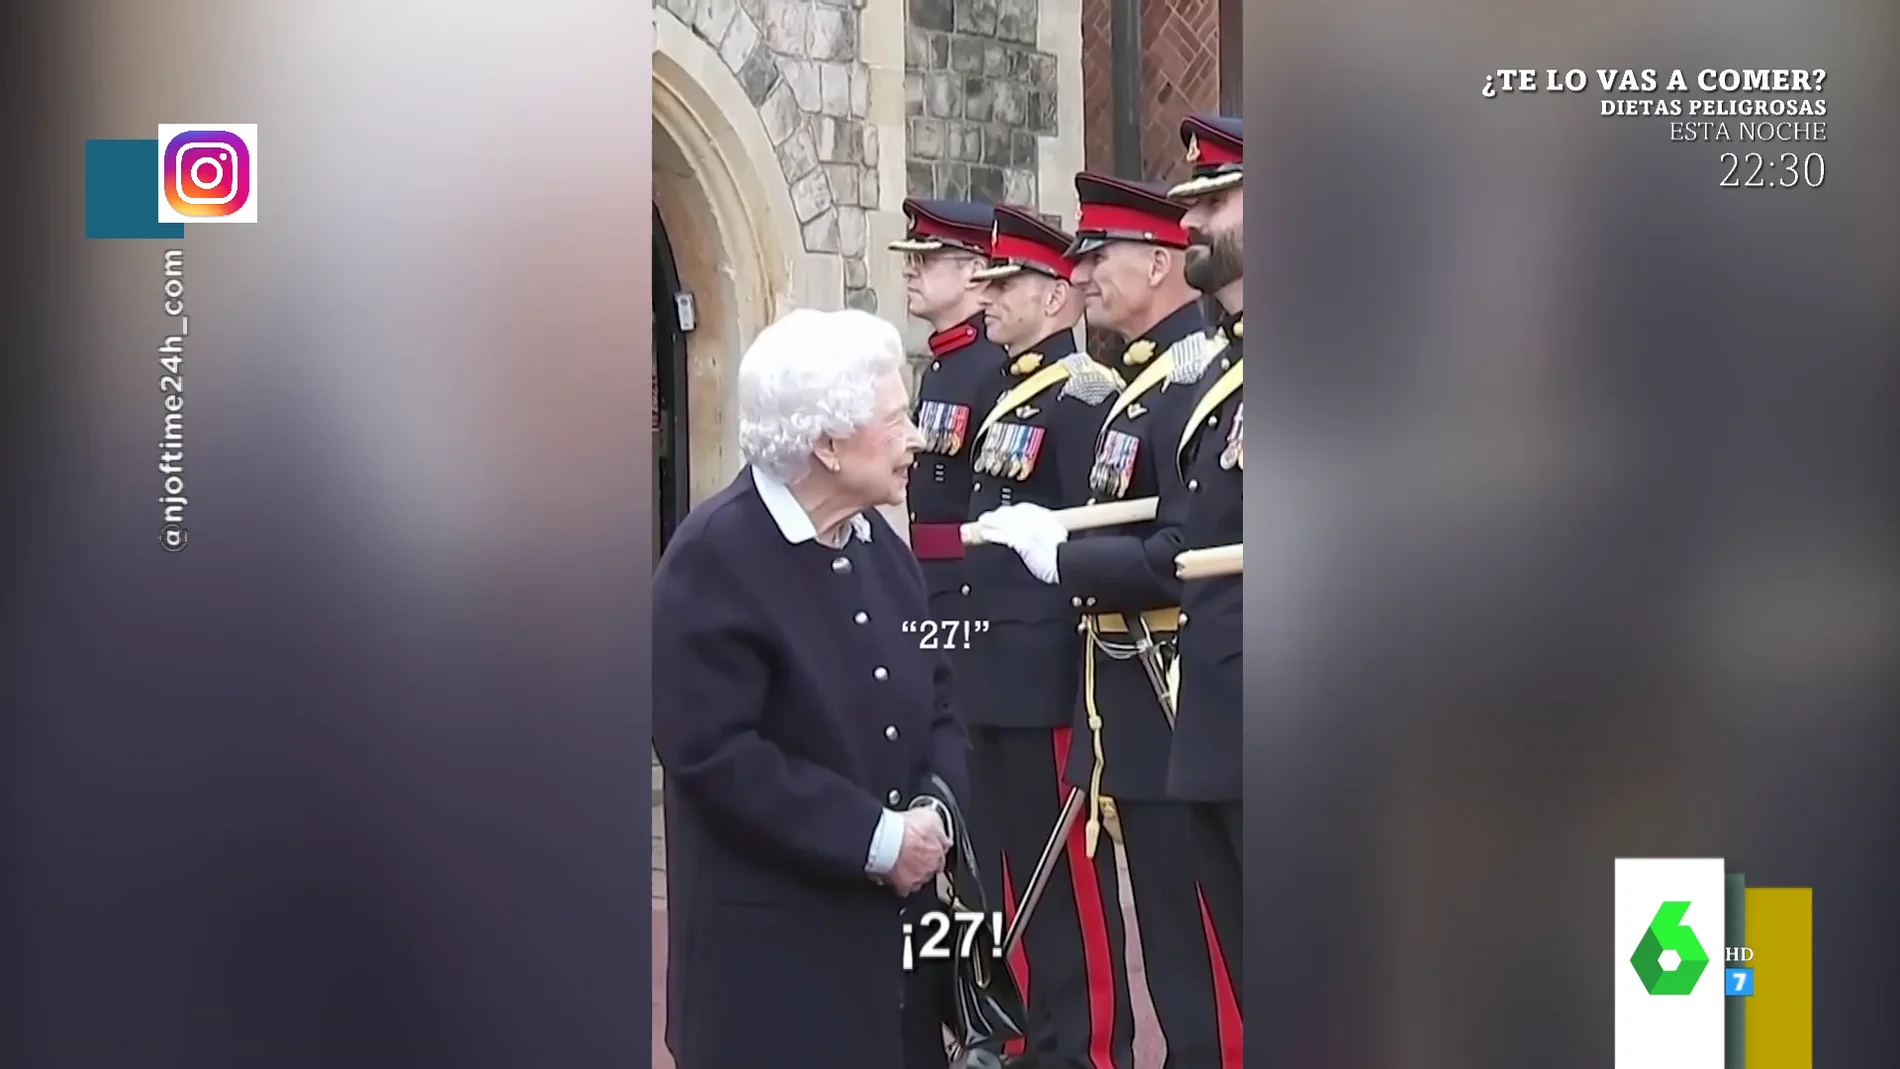   La conversación viral de la reina Isabel con un guardia real de Palacio: ¿está intentado ligar con él?